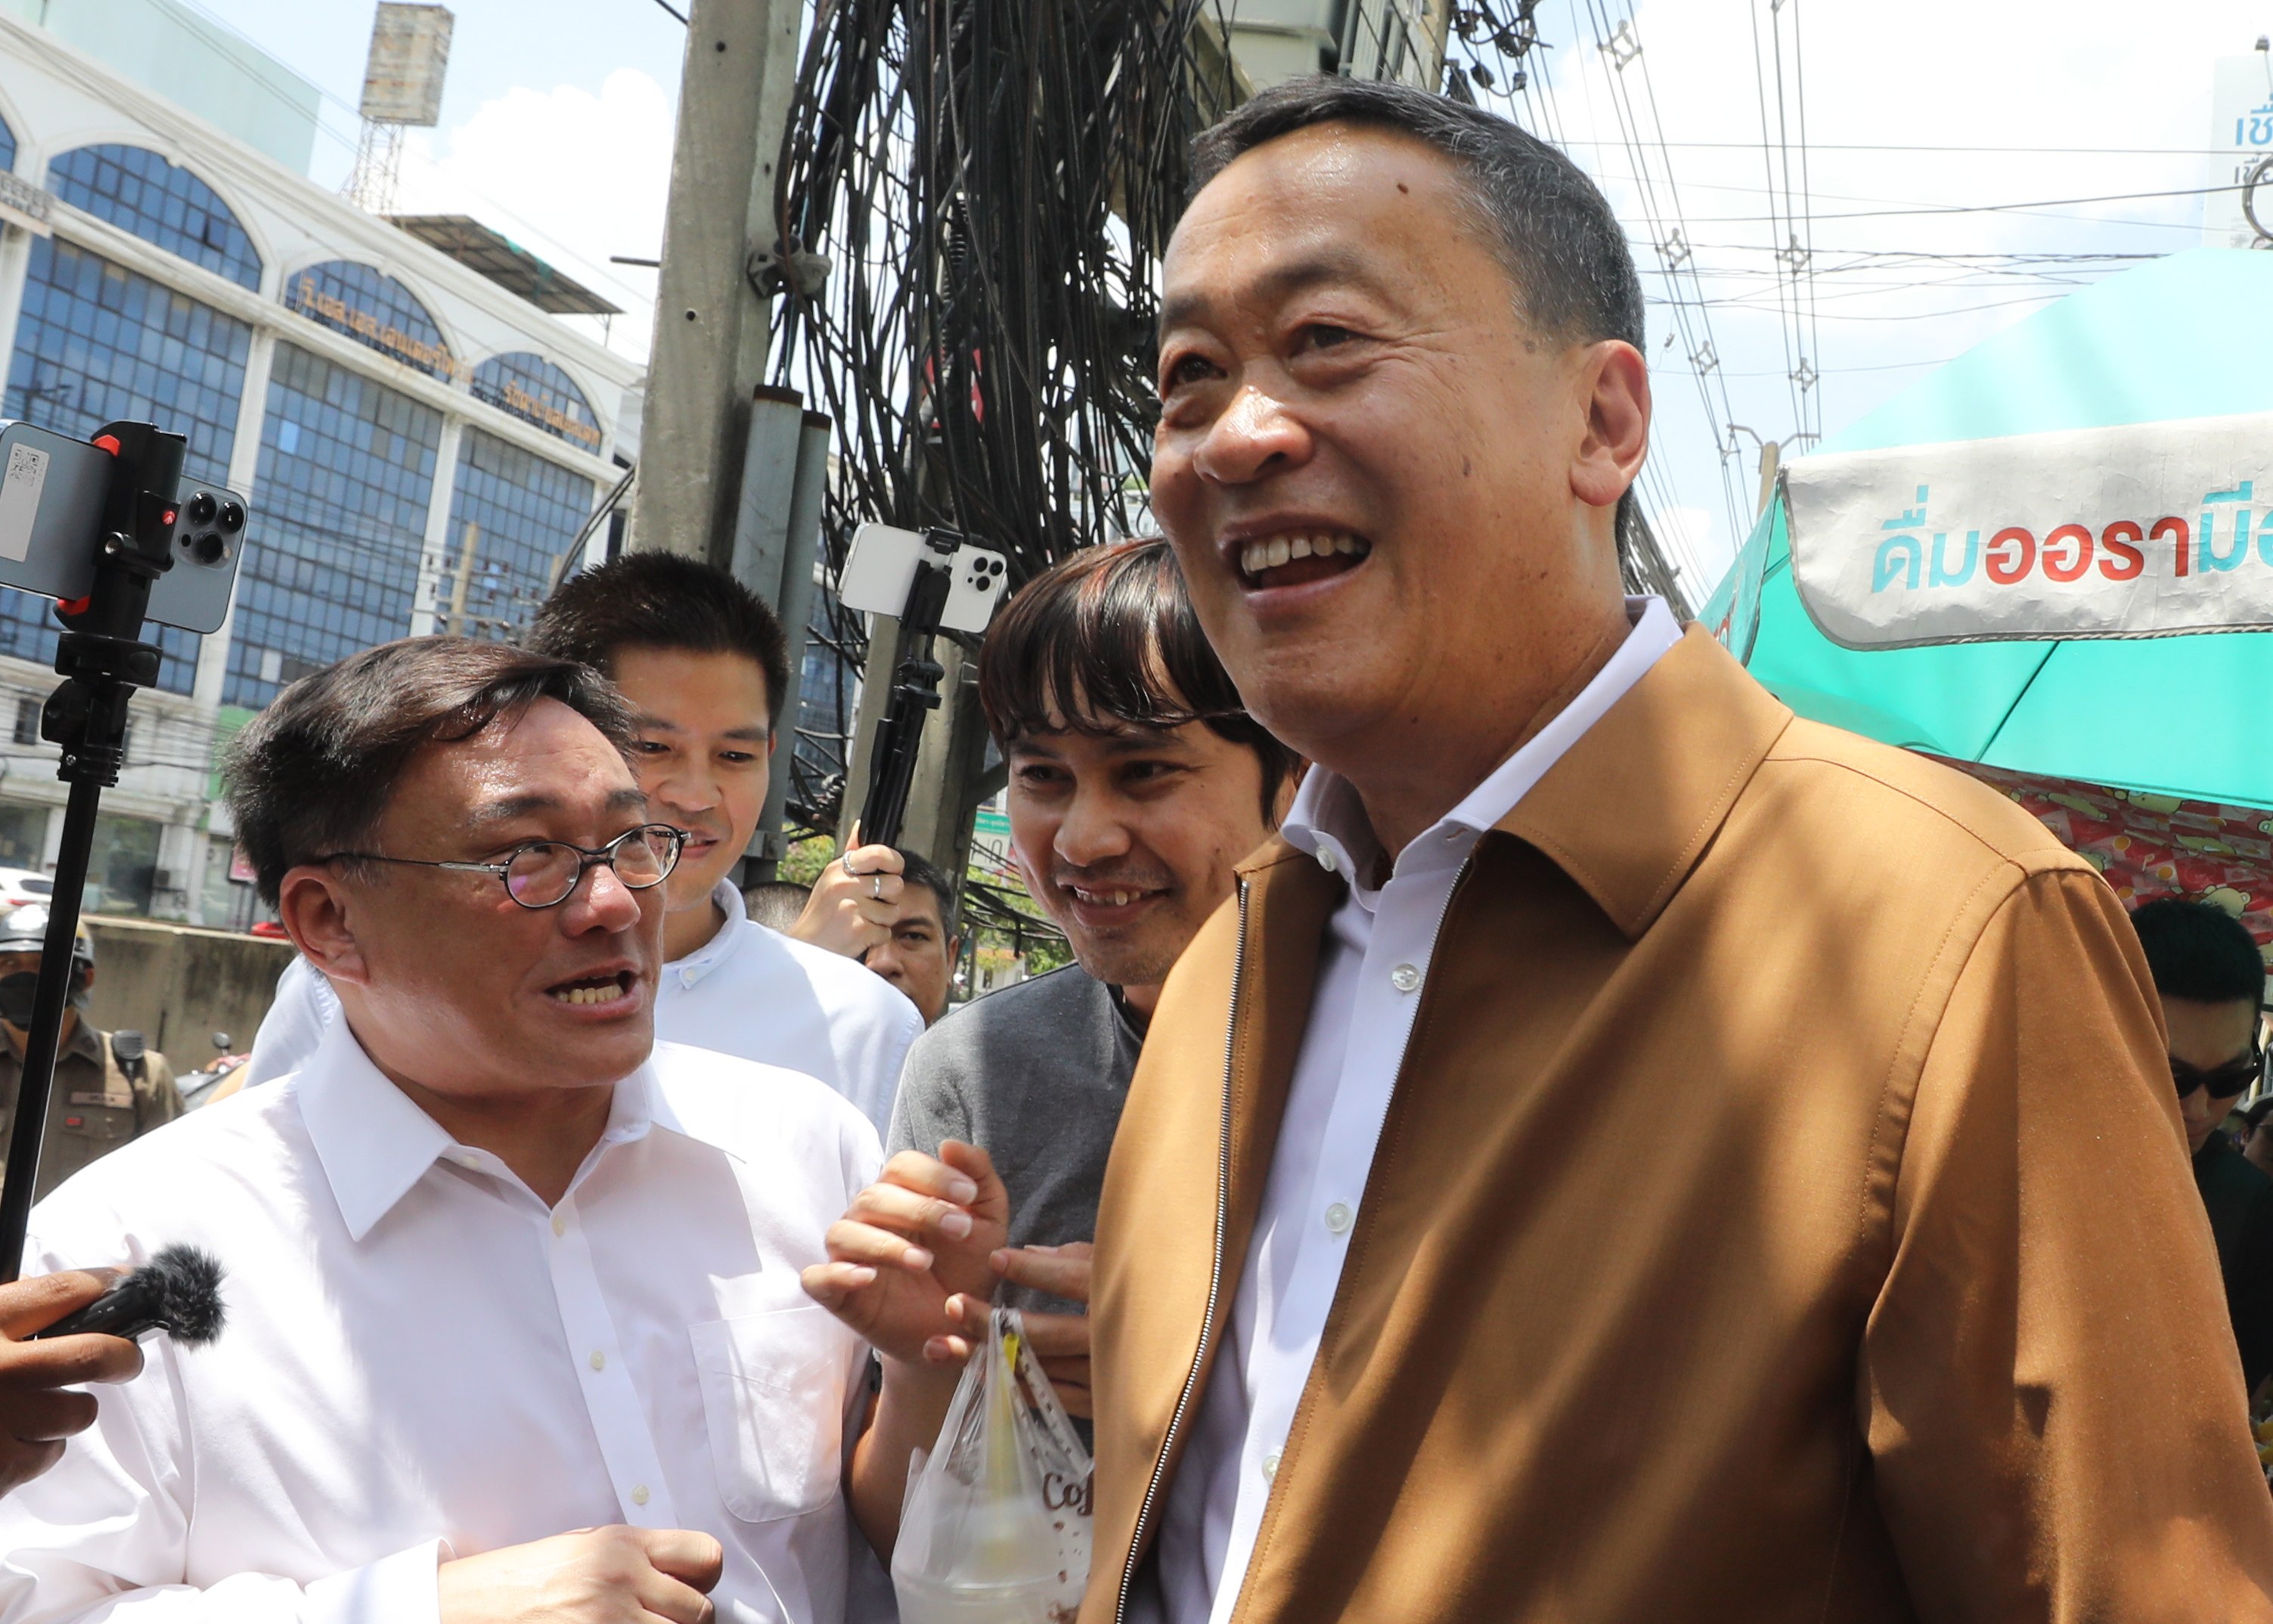 New Thai Prime Minister Srettha Thavisin (R) visits street food vendors at Thaiphat Market in Bangkok, Thailand, on Thursday. Photo: EPA-EFE